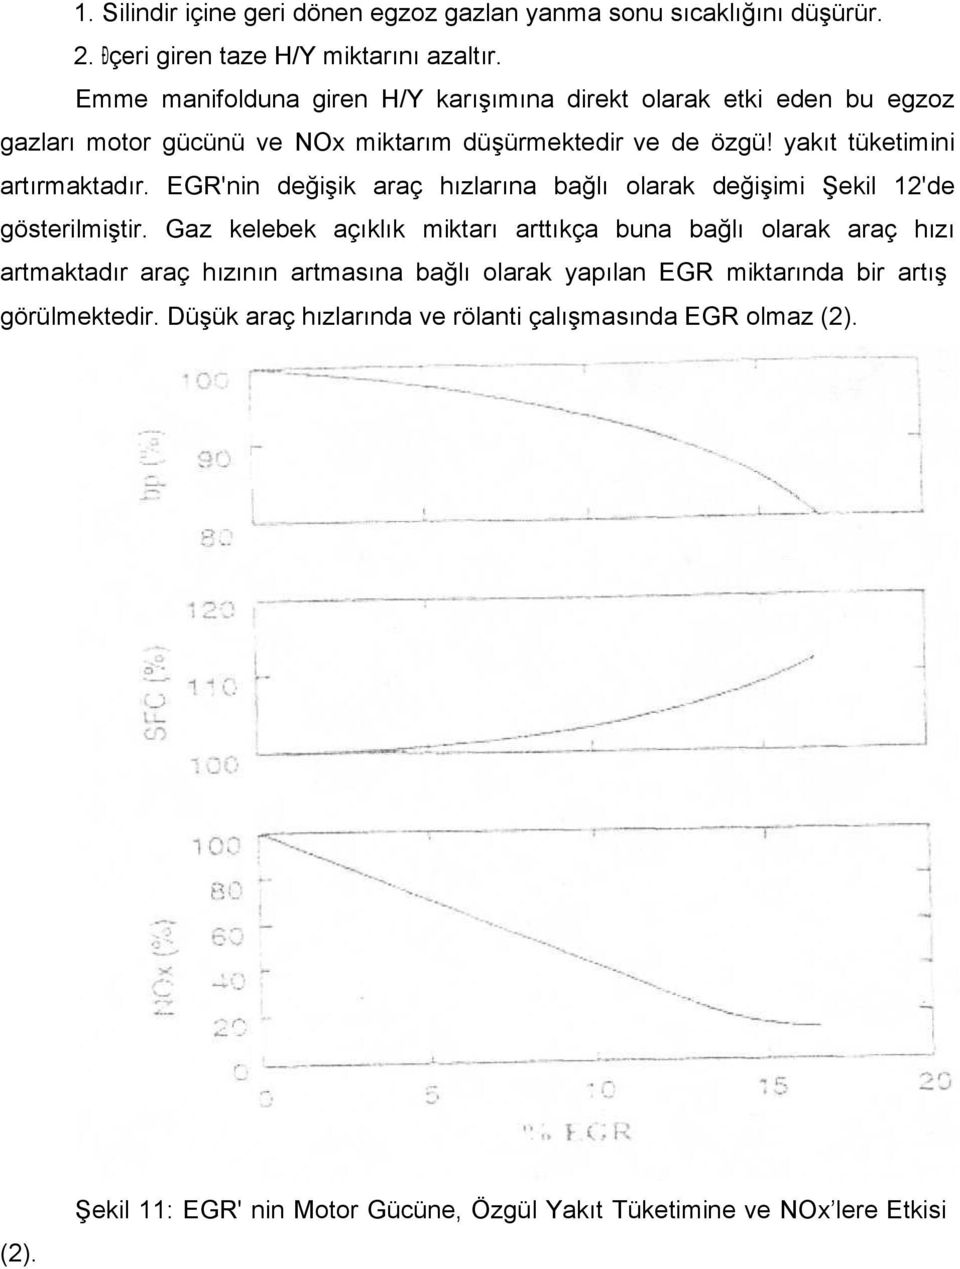 EGR'nin değişik araç hızlarına bağlı olarak değişimi Şekil 12'de gösterilmiştir.